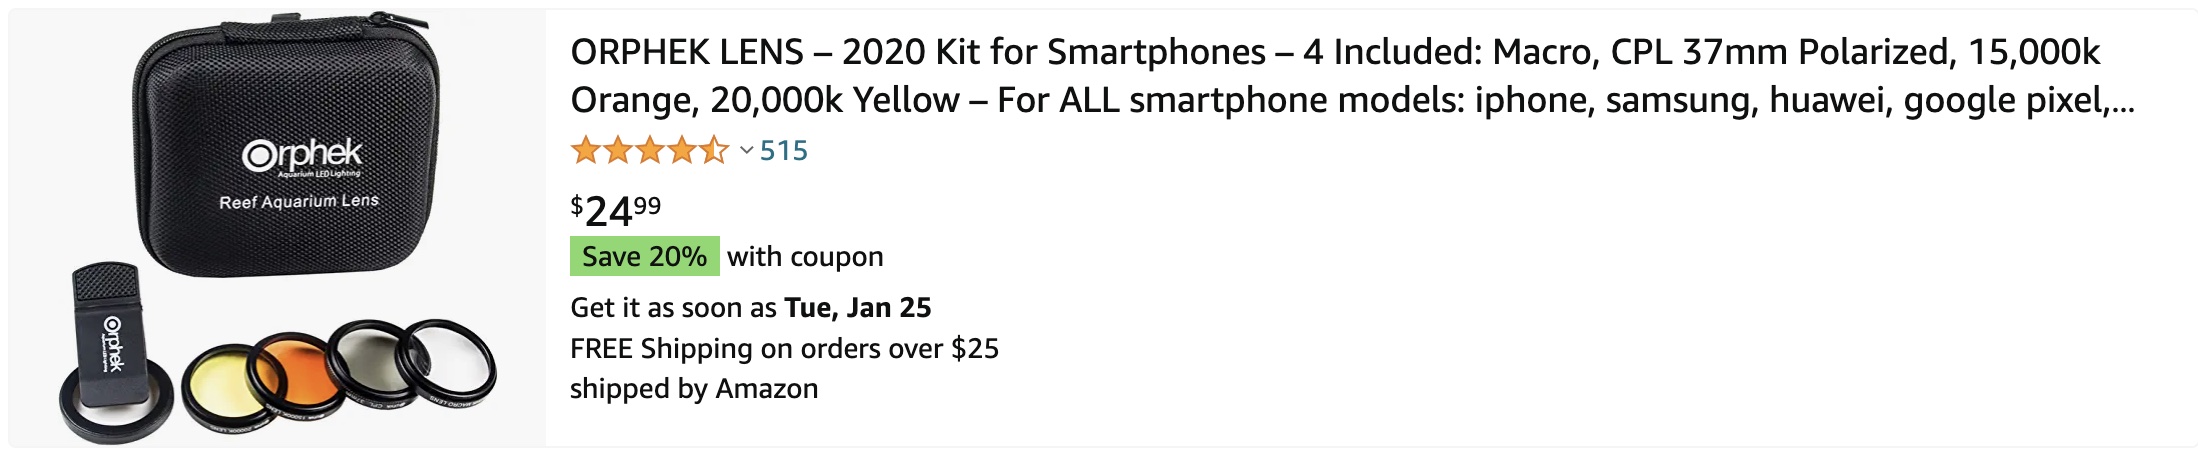 køb på amazon ORPHEK LENS – 2020 Kit til smartphones